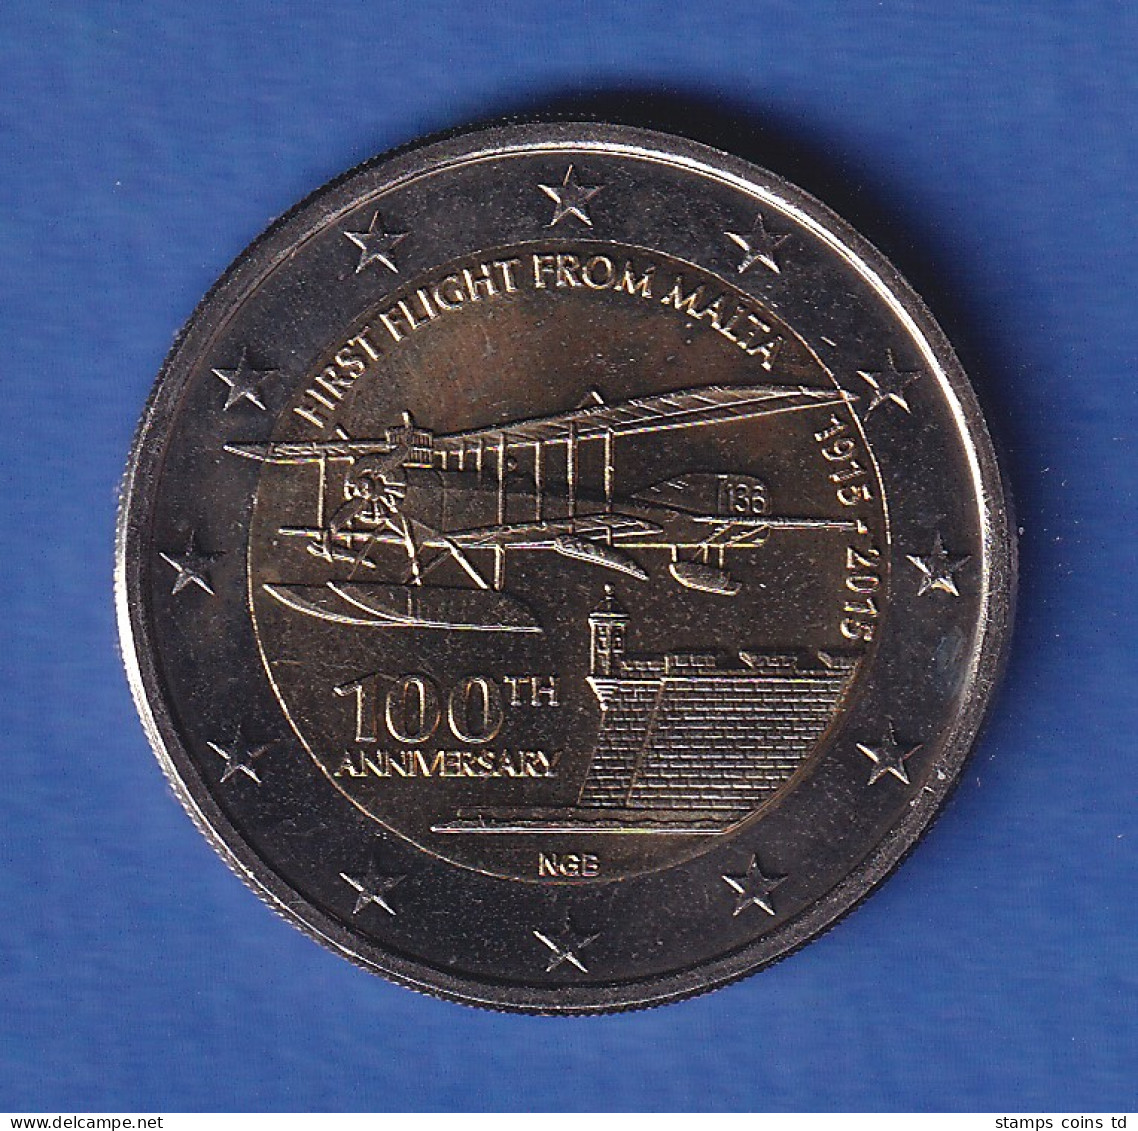 Malta 2015 2-Euro-Sondermünze 100 Jahre Erstflug Bankfr. Unzirk.  - Malta